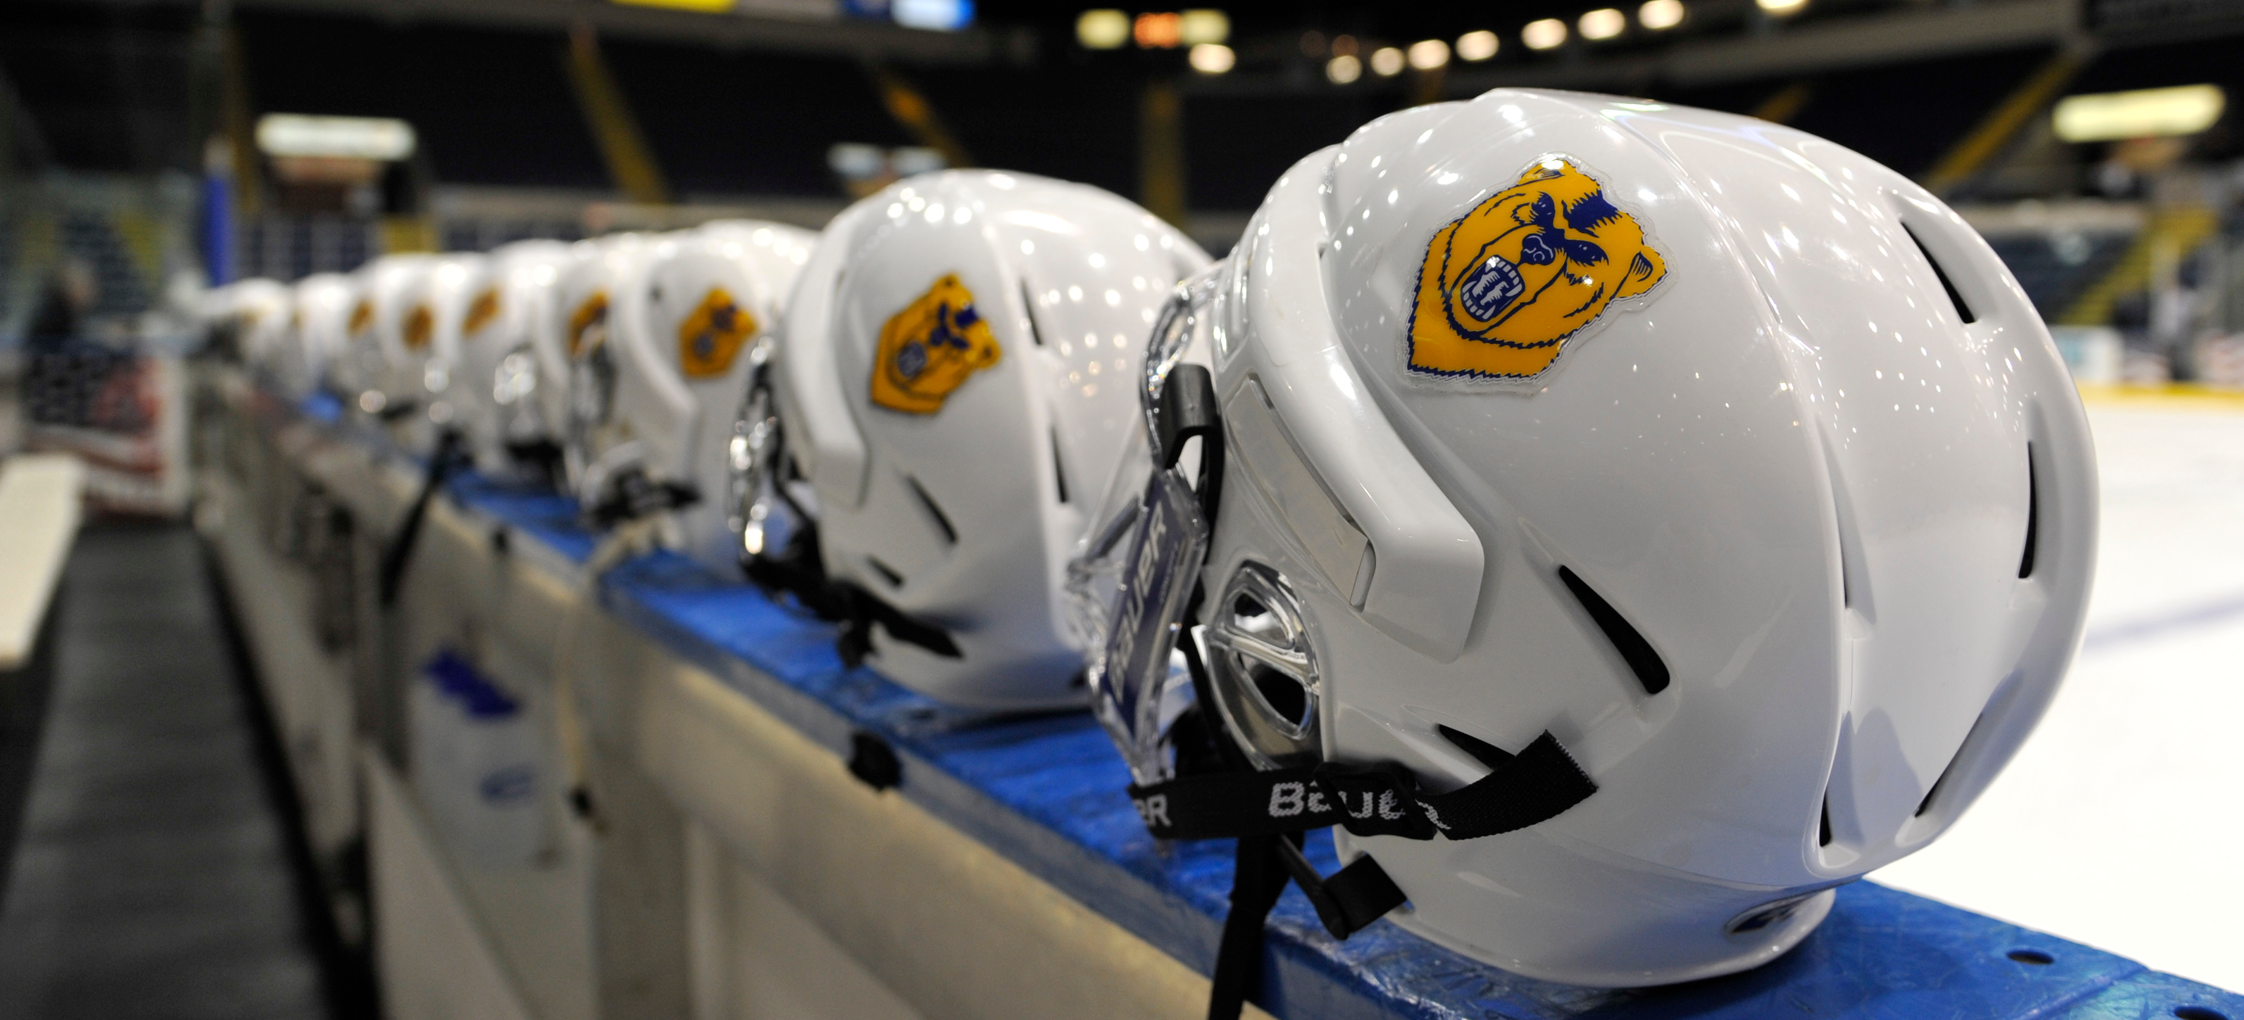 Hockey Helmets in a row